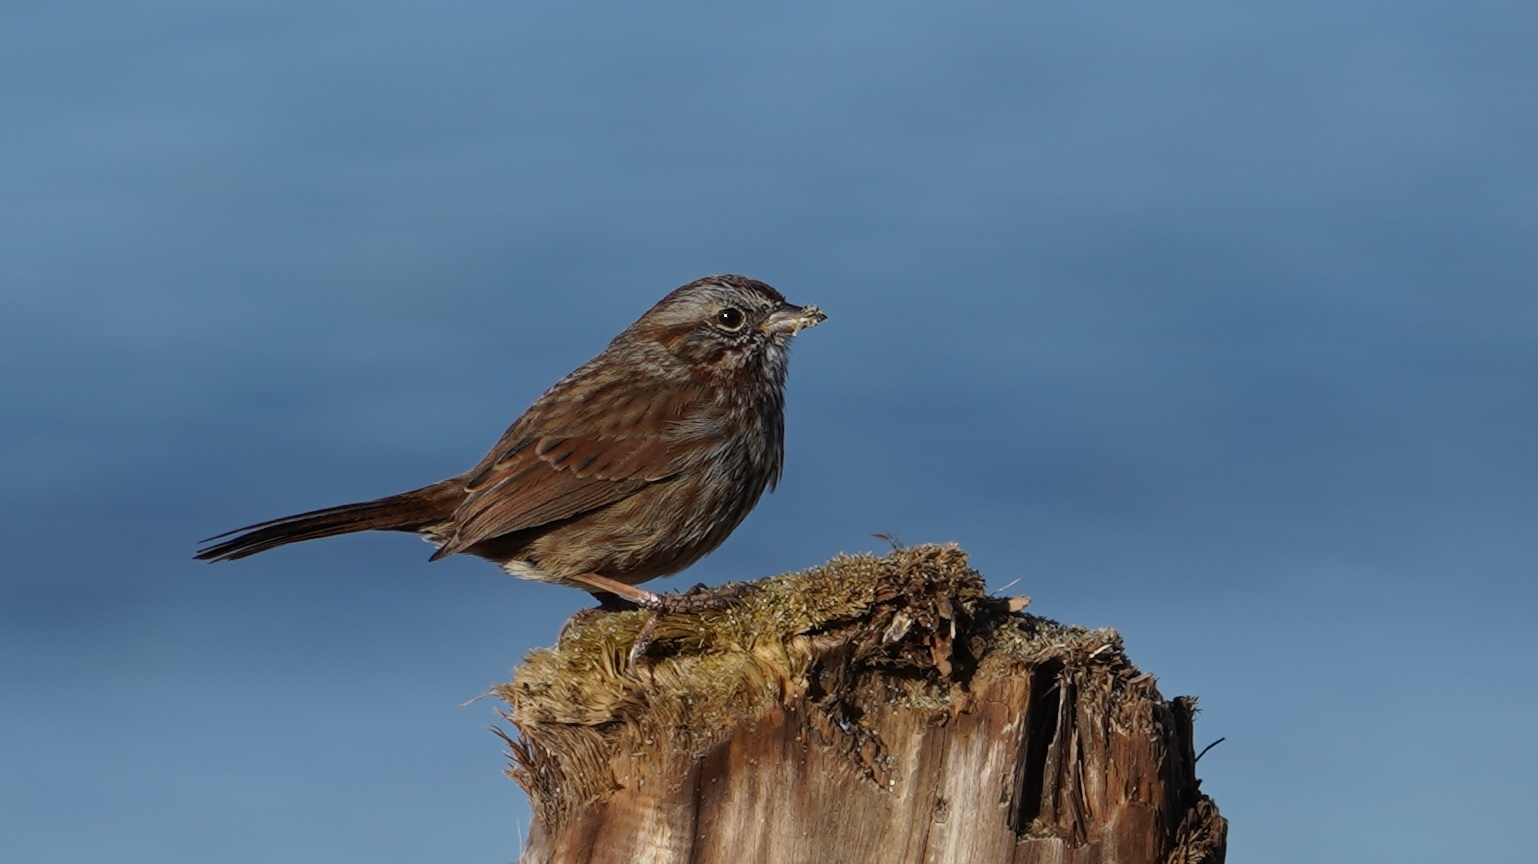 Song sparrow on a stump